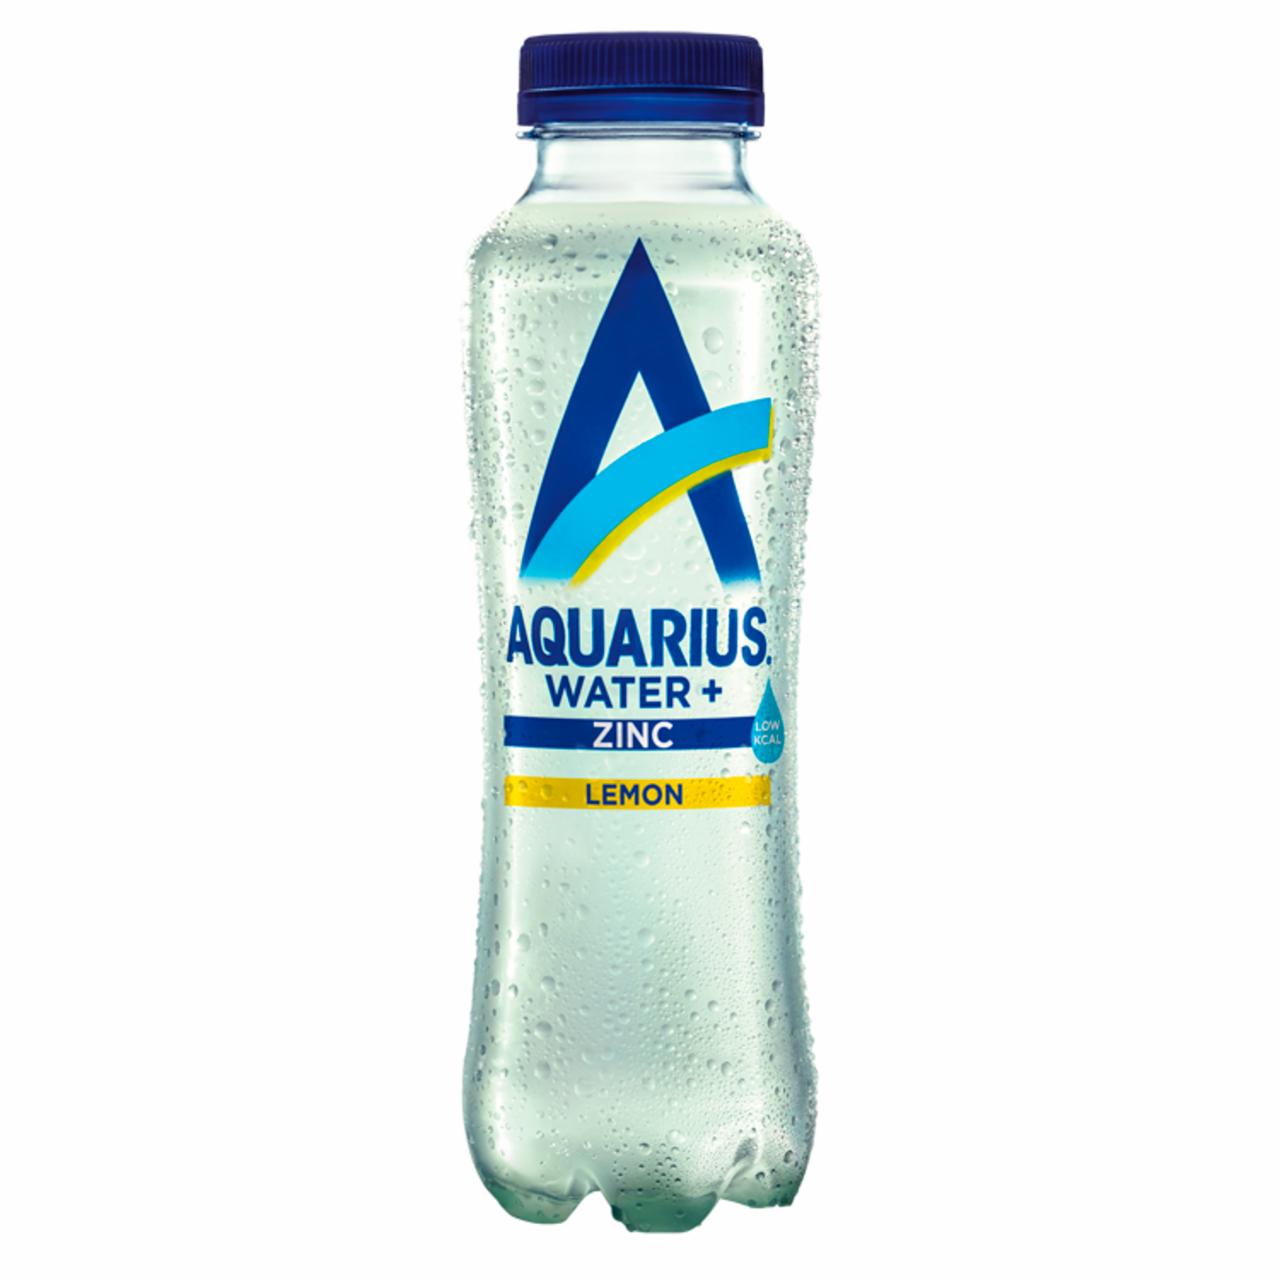 Képek - Aquarius Water+ citrom ízű szénsavmentes üdítőital hozzáadott cinkkel 400 ml